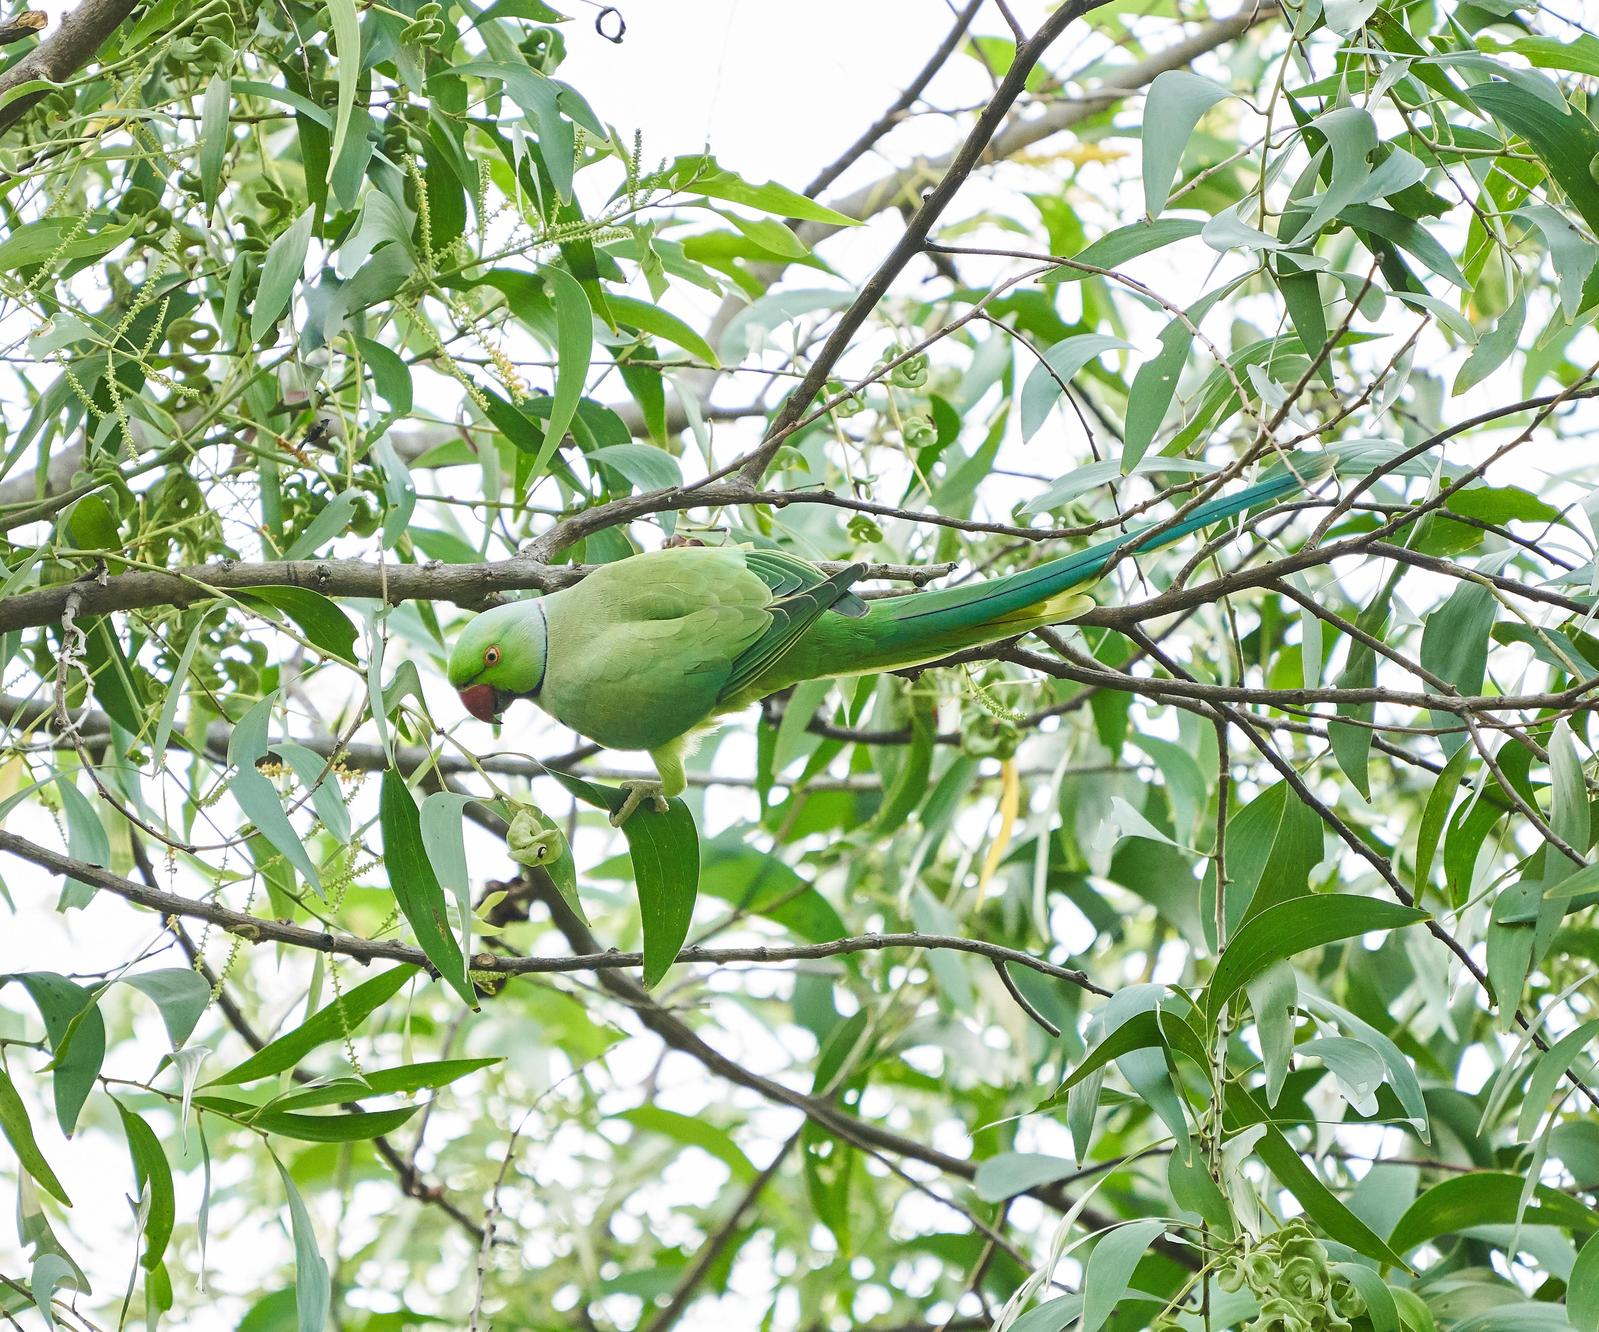 Alexandrine/Rose-ringed Parakeet Photo by Steven Cheong